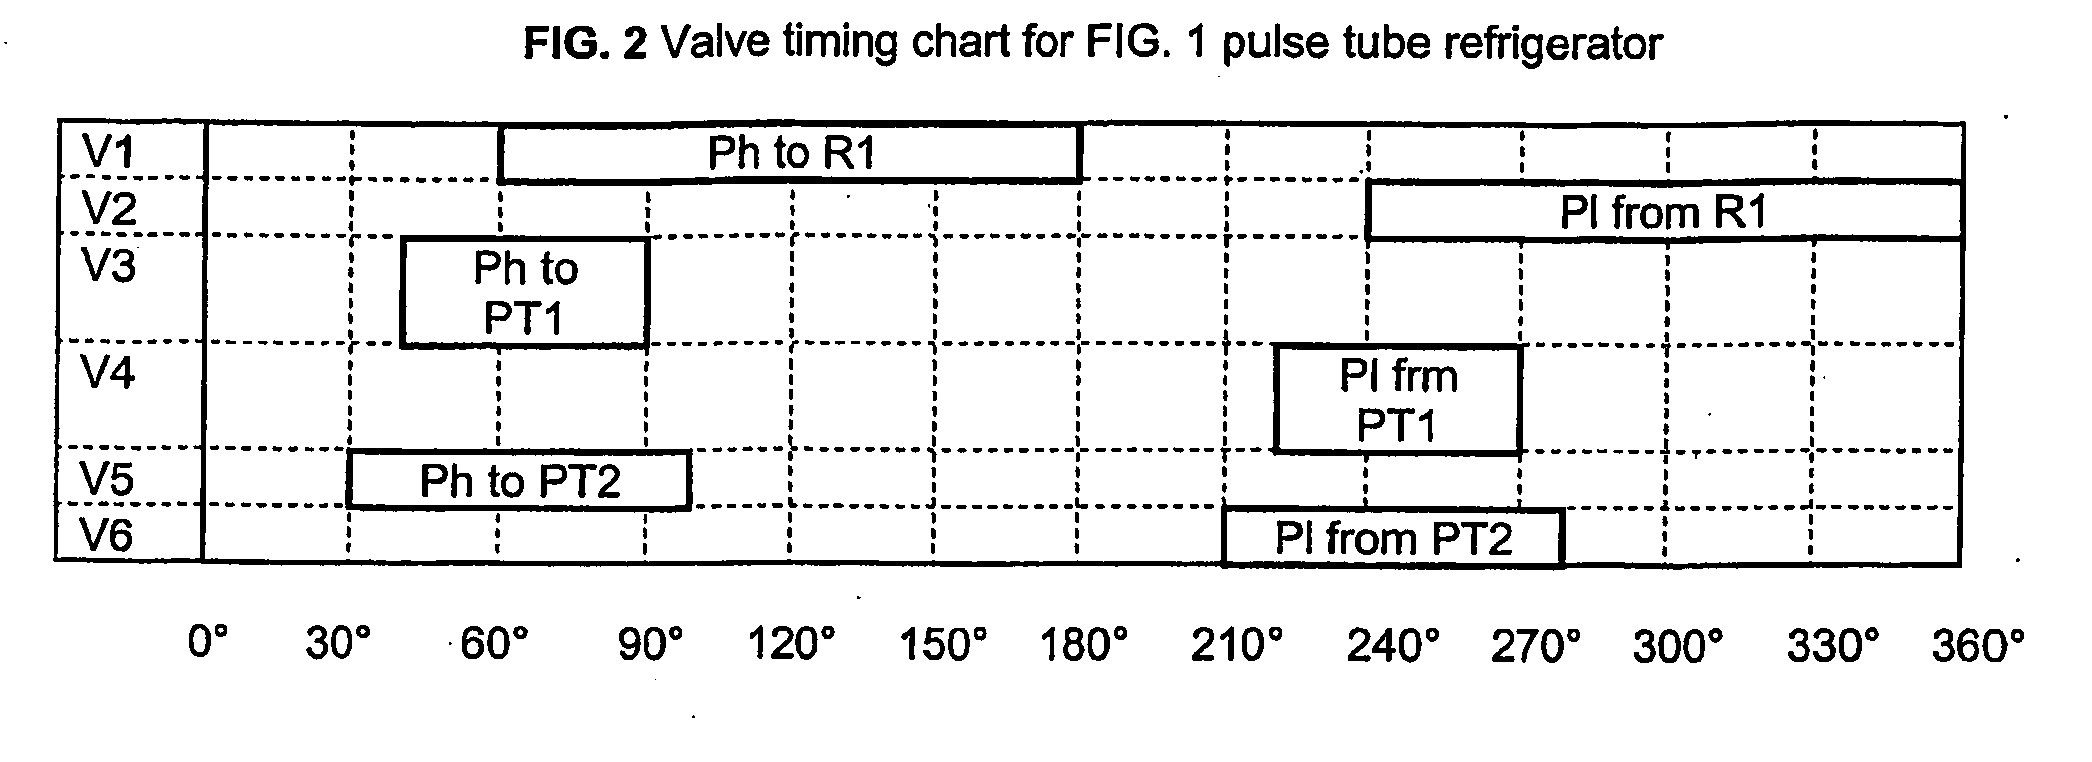 Hybrid spool valve for multi-port pulse tube